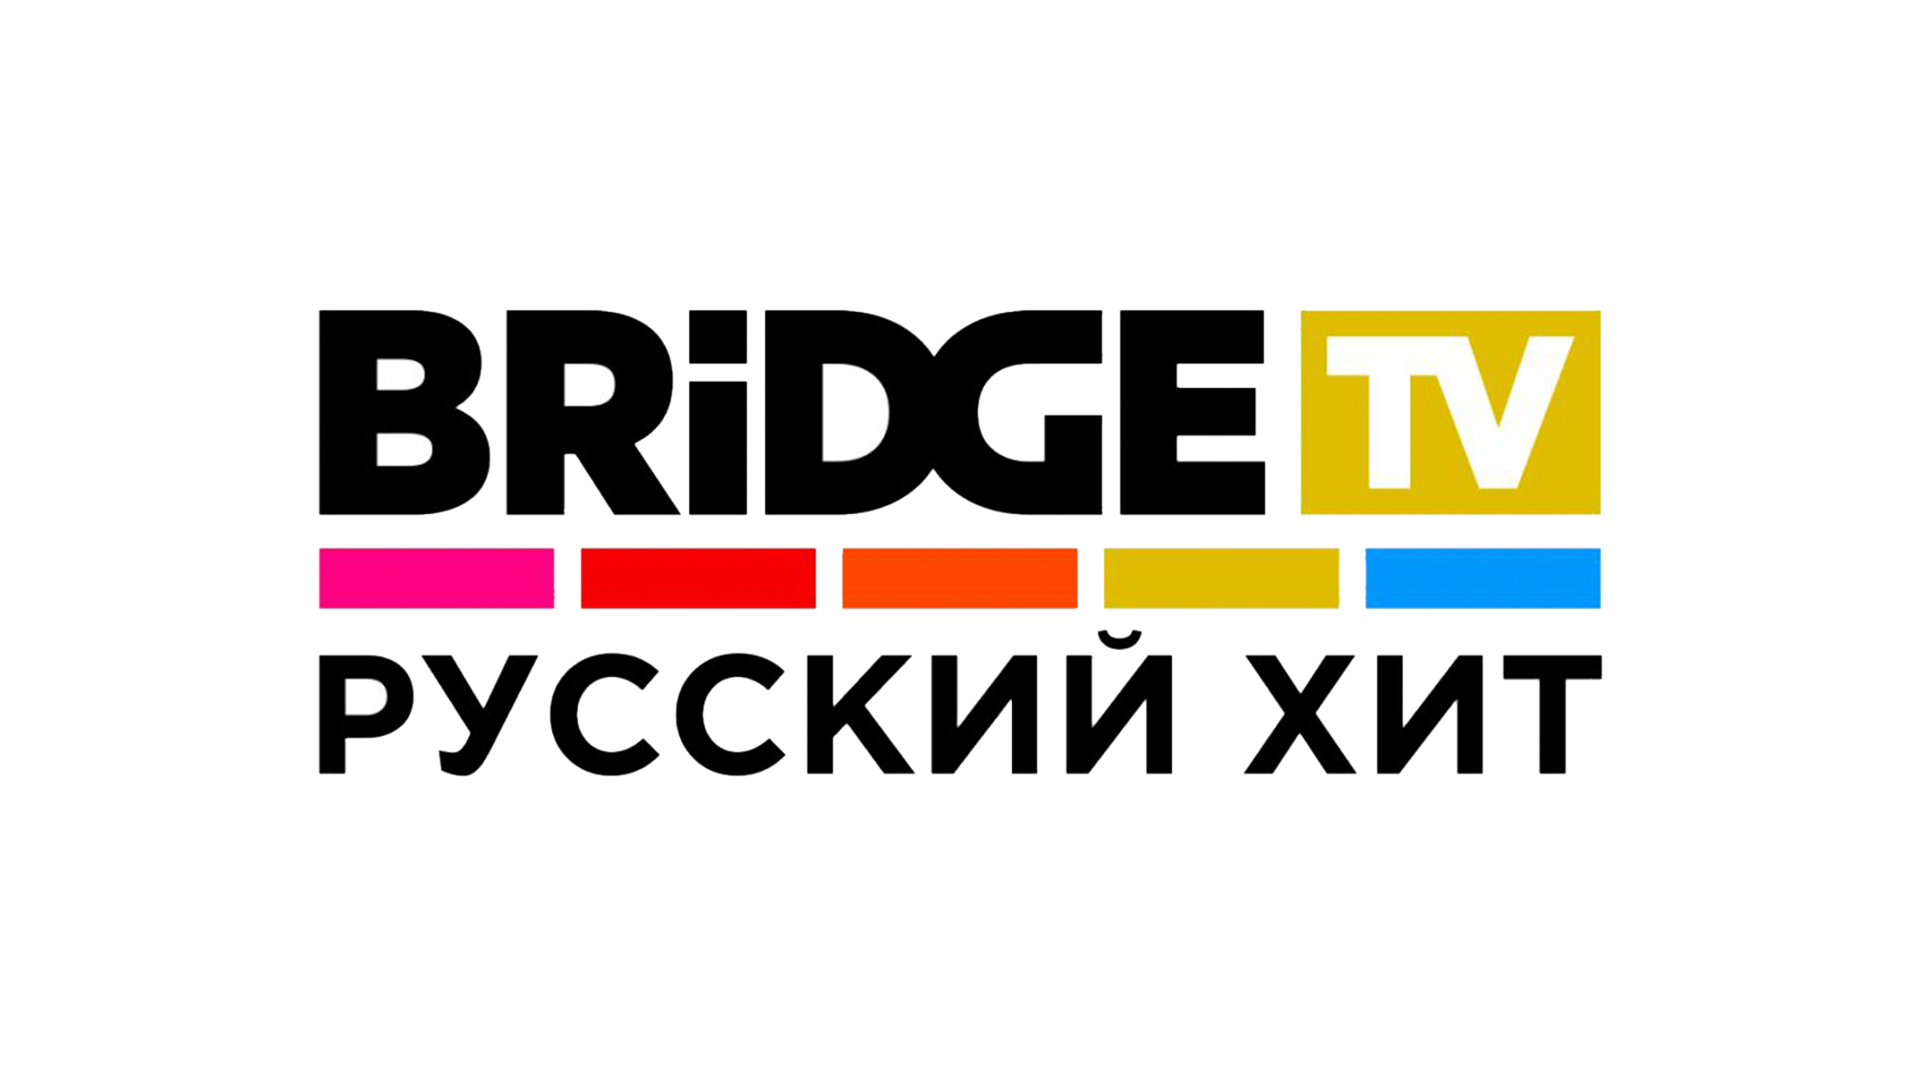 Bridge TV русский хит. Bridge TV логотип. Bridge TV русский хит логотип. Логотип канала бридж ТВ.